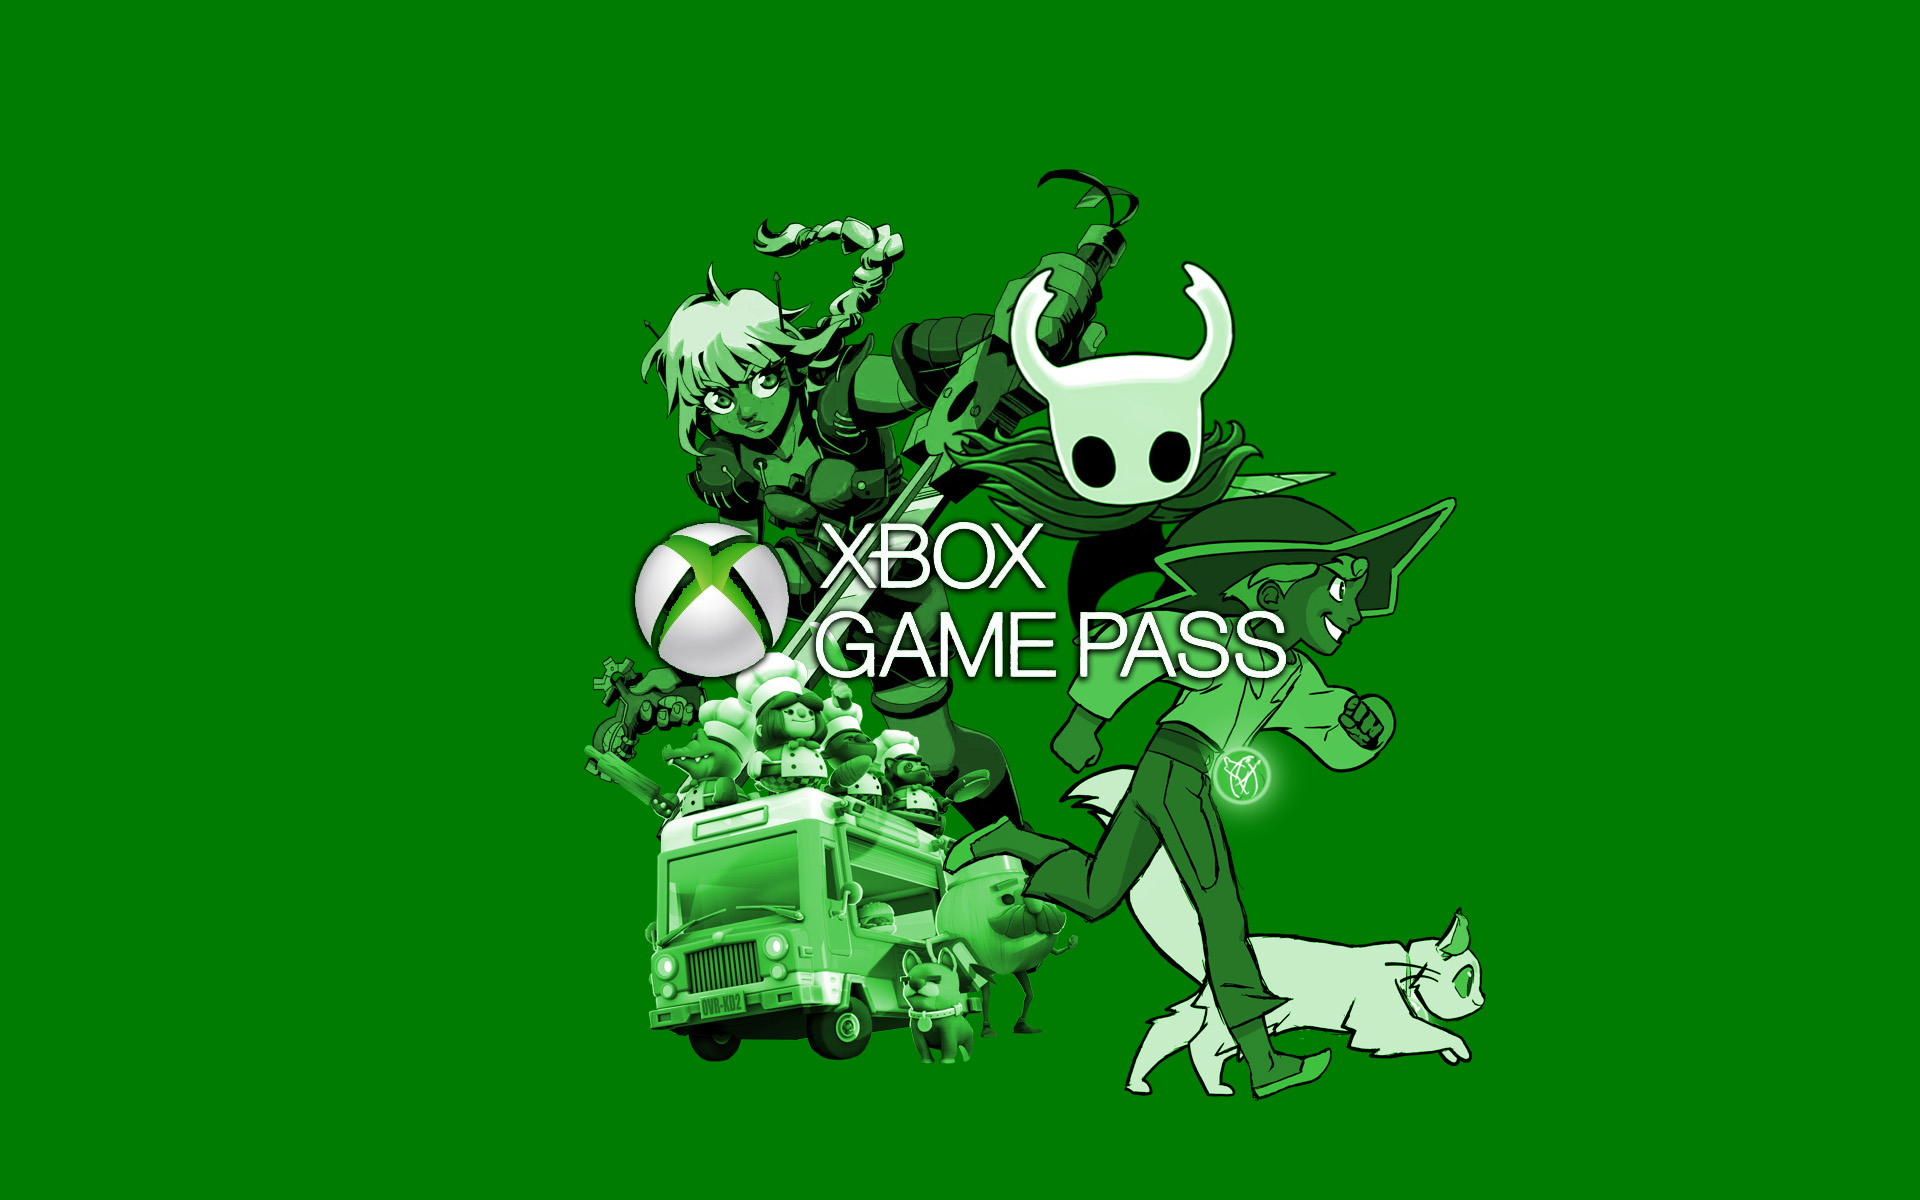 Jogo de Enigma para jogar com amigos! 🕹Plataformas: Xbox One